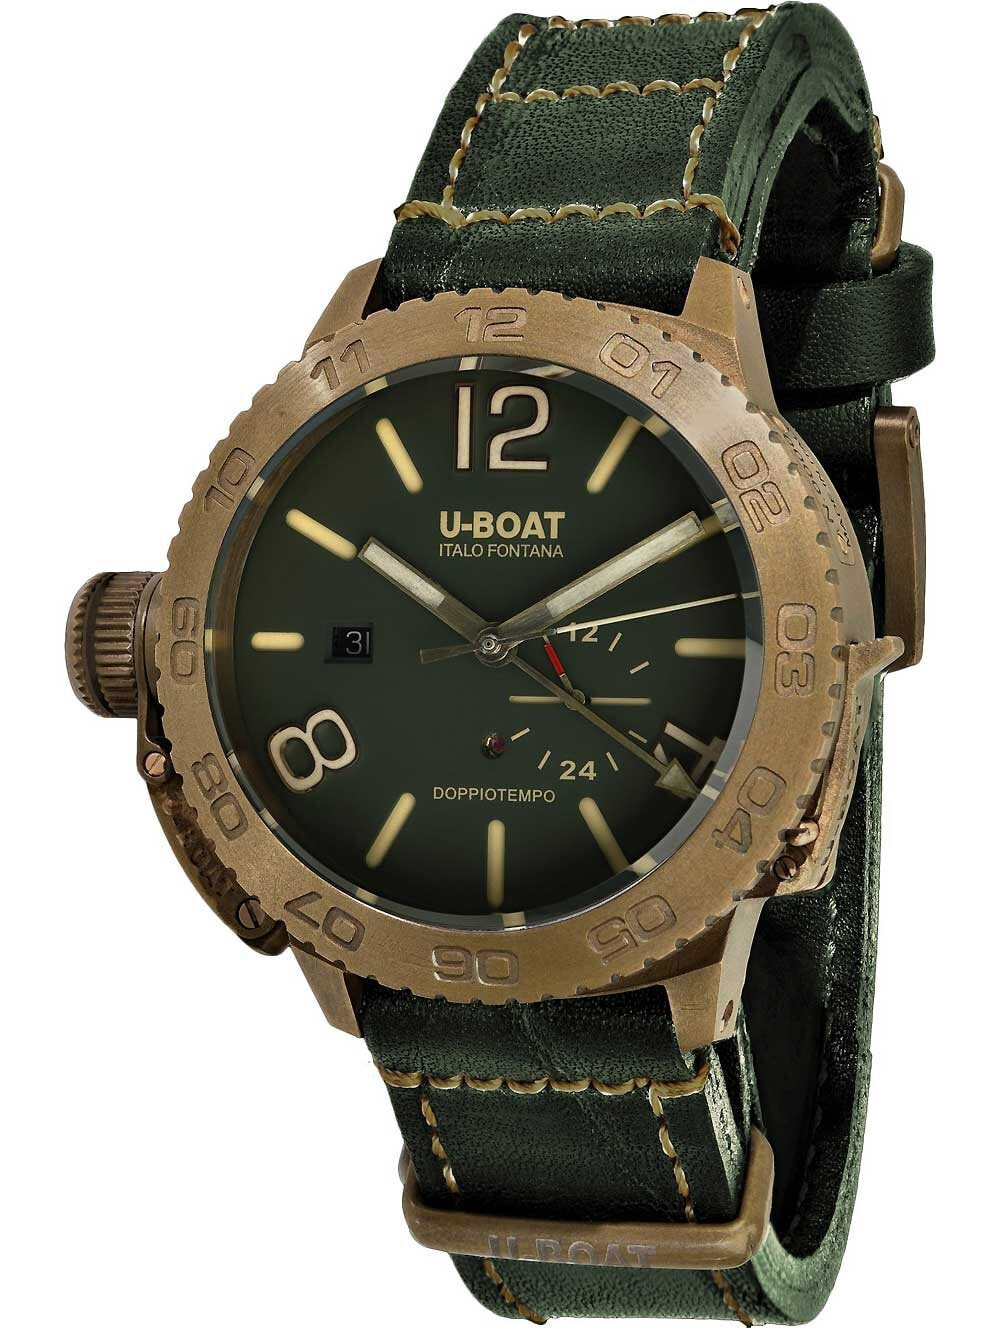 Мужские наручные часы с зеленым кожаным ремешком U-Boat 9088 Doppotiempo Automatic 46mm 10 ATM